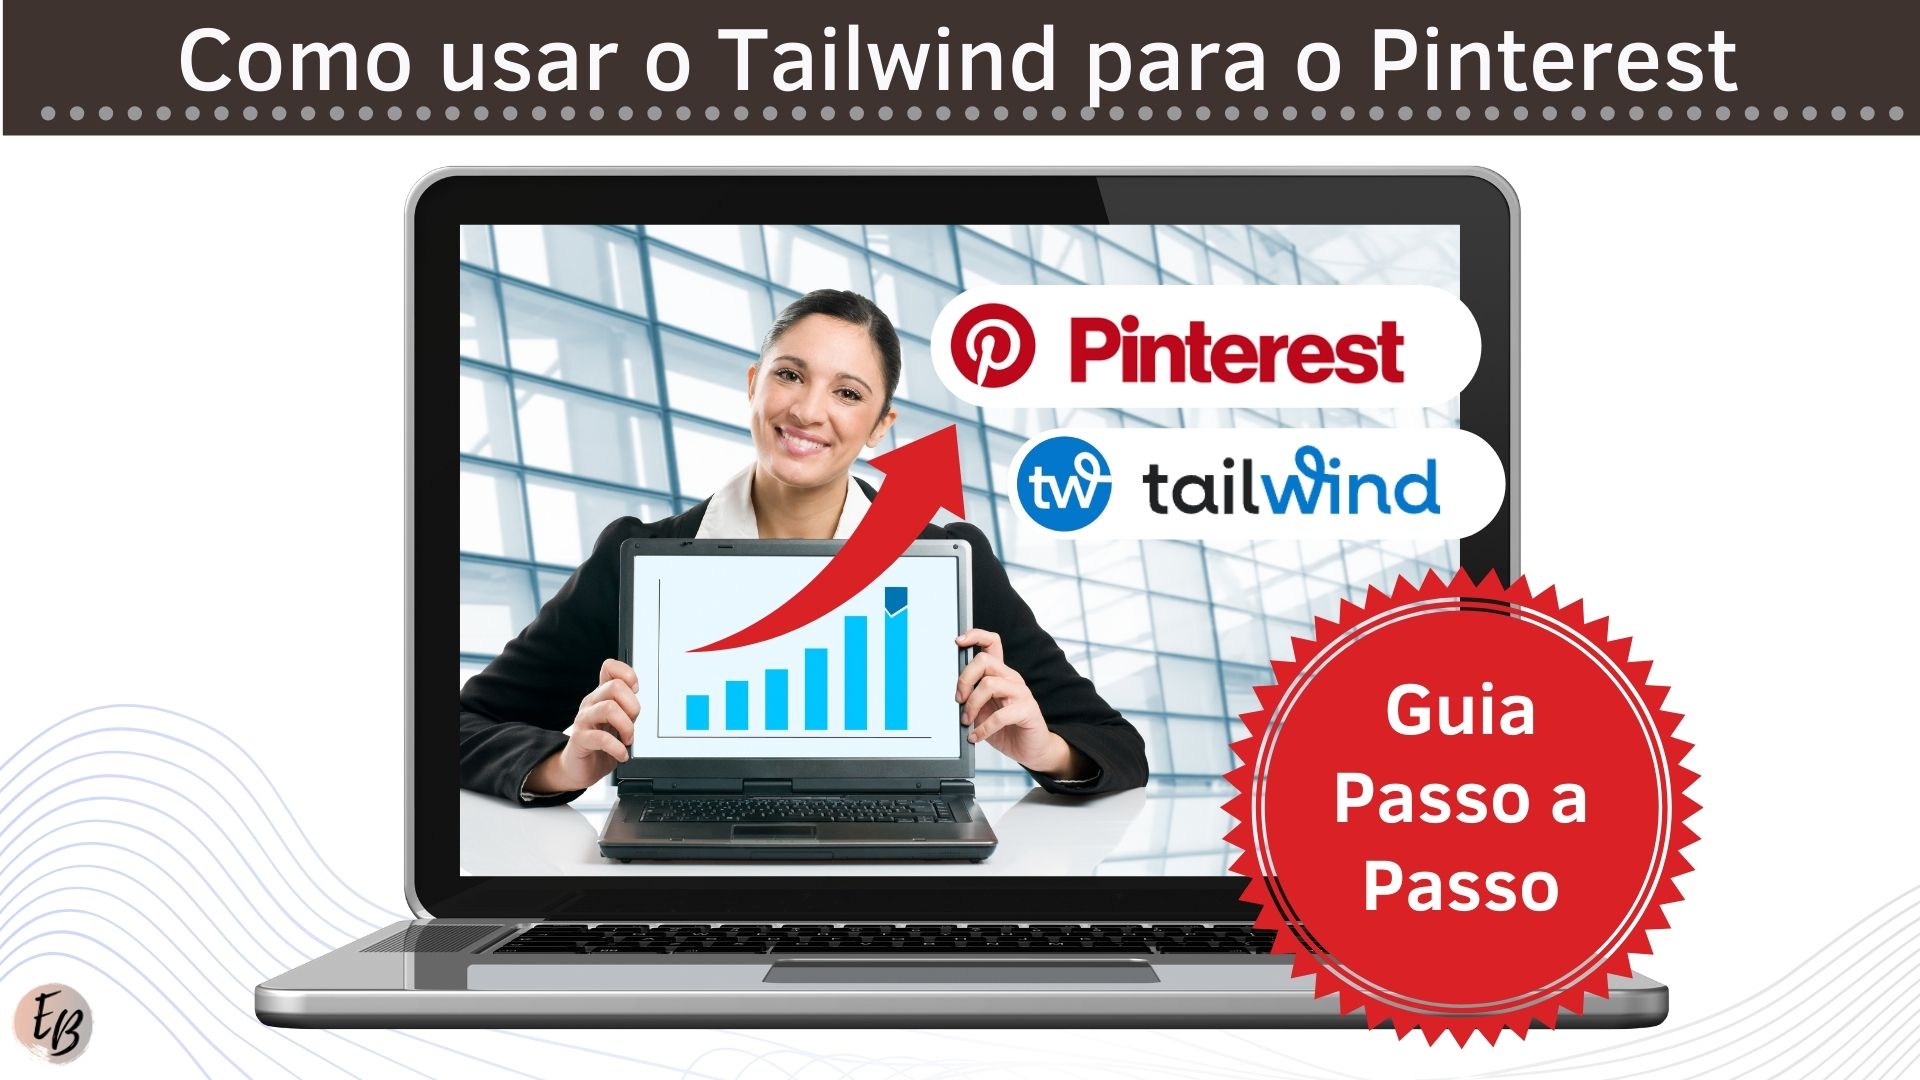 Como usar o Tailwind para o Pinterest 1 - Home